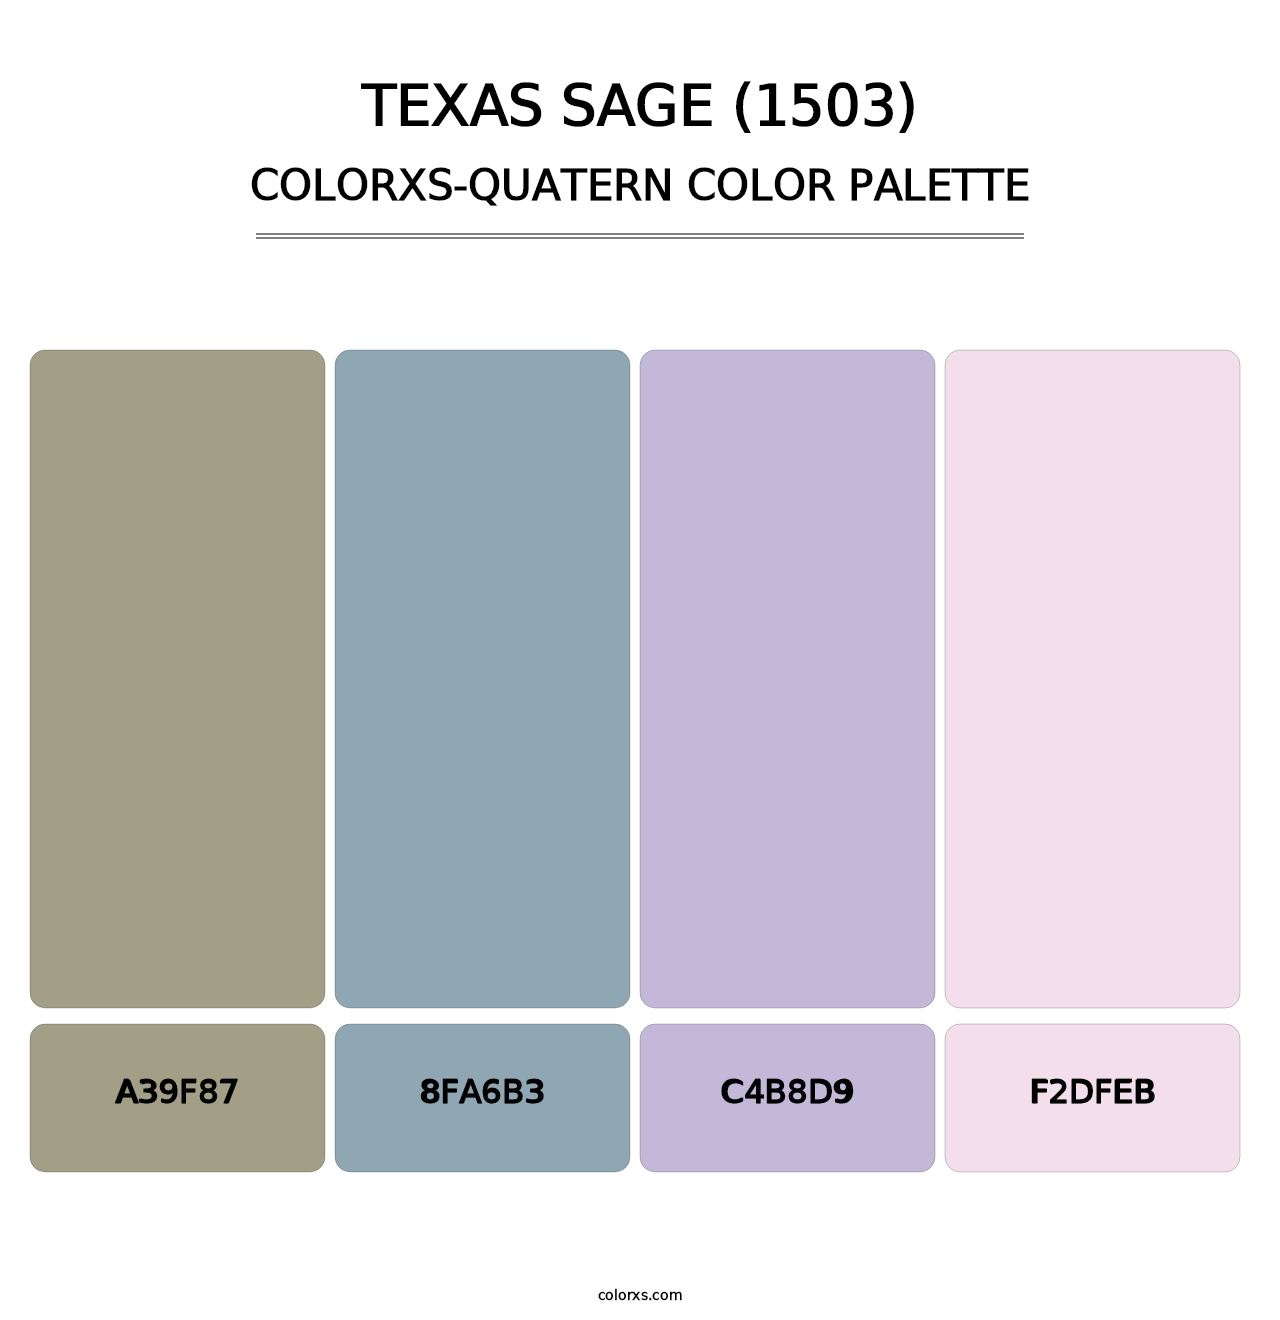 Texas Sage (1503) - Colorxs Quatern Palette